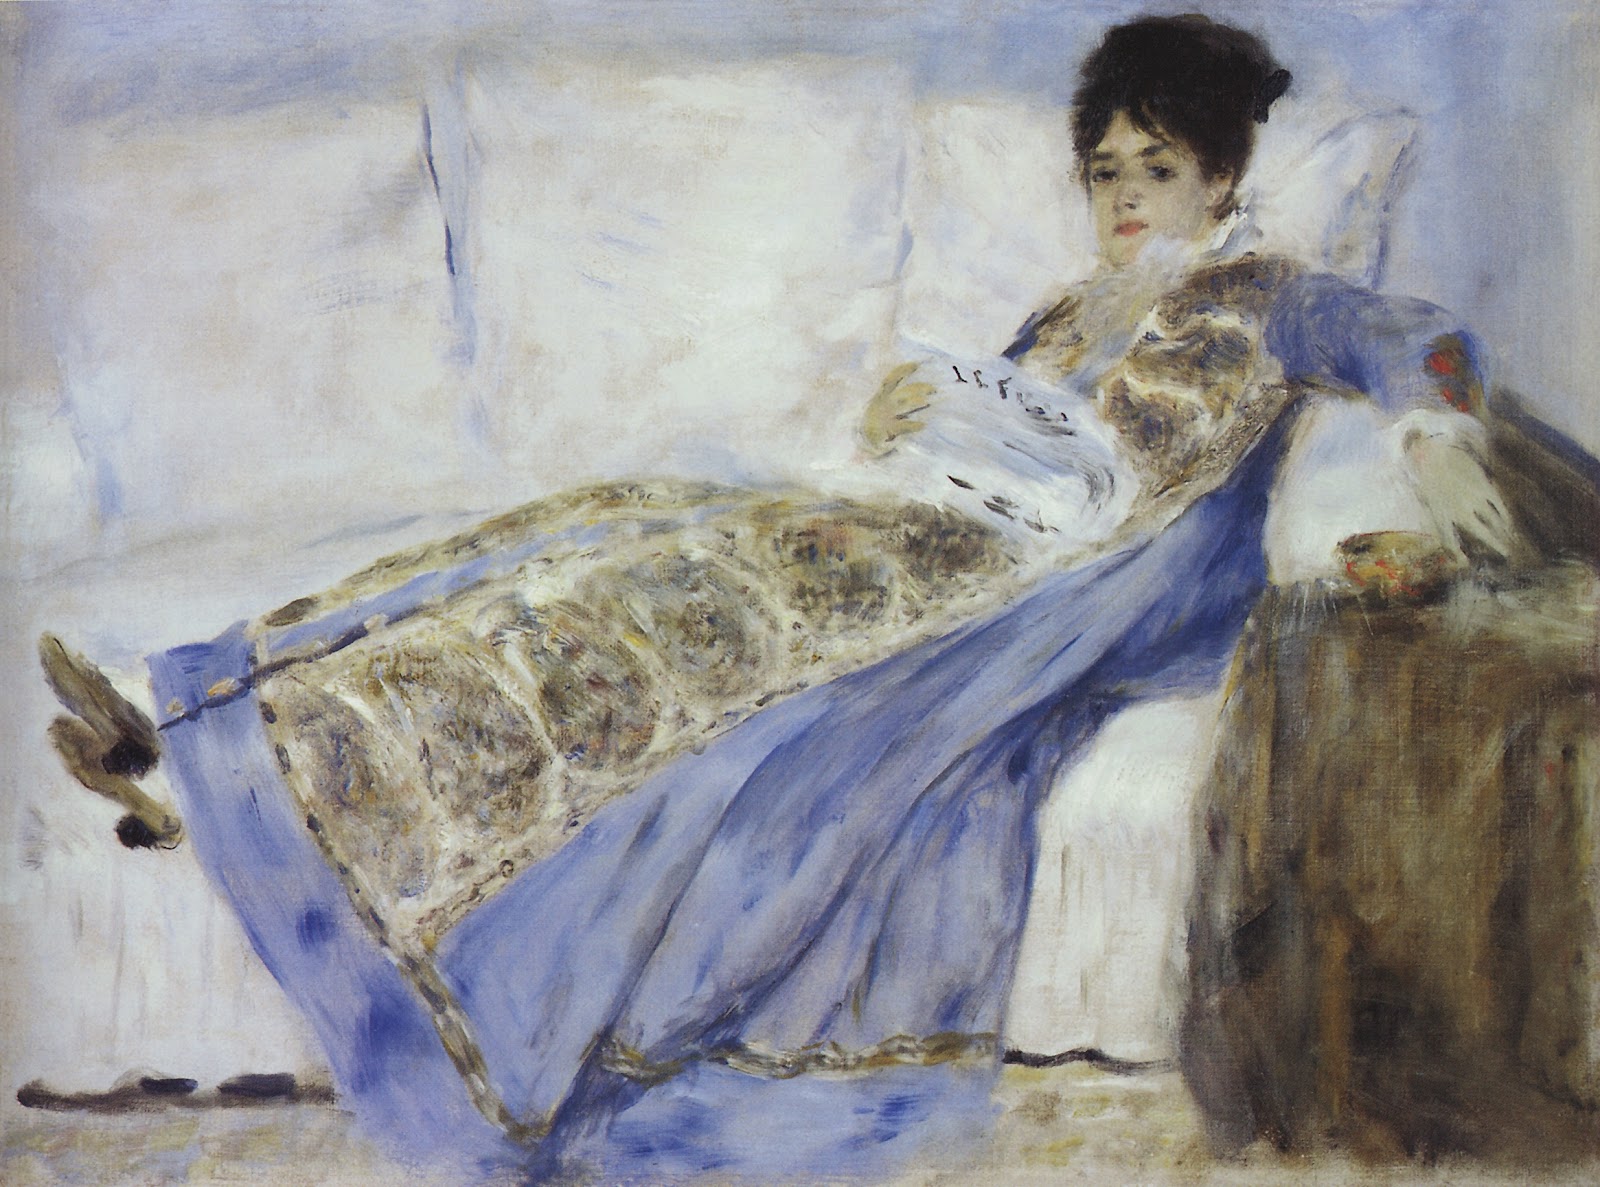 Pierre+Auguste+Renoir-1841-1-19 (211).jpg